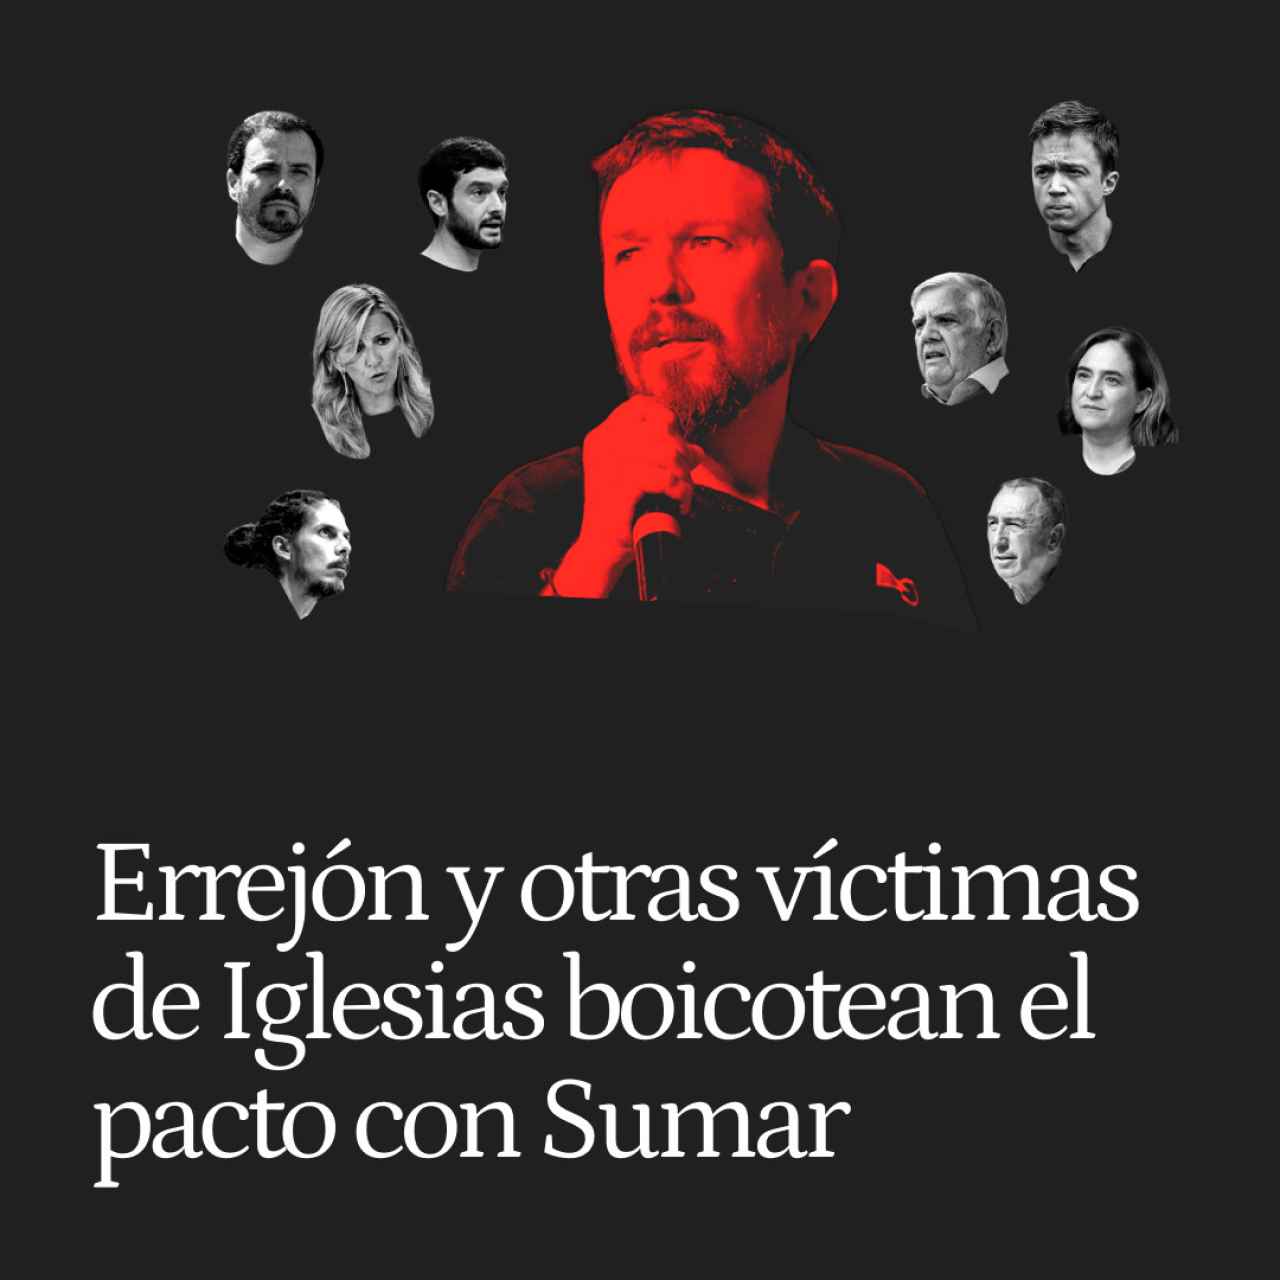 Errejón y otras víctimas de Iglesias boicotean el pacto con Sumar: 'Quien a hierro mata, a hierro muere'